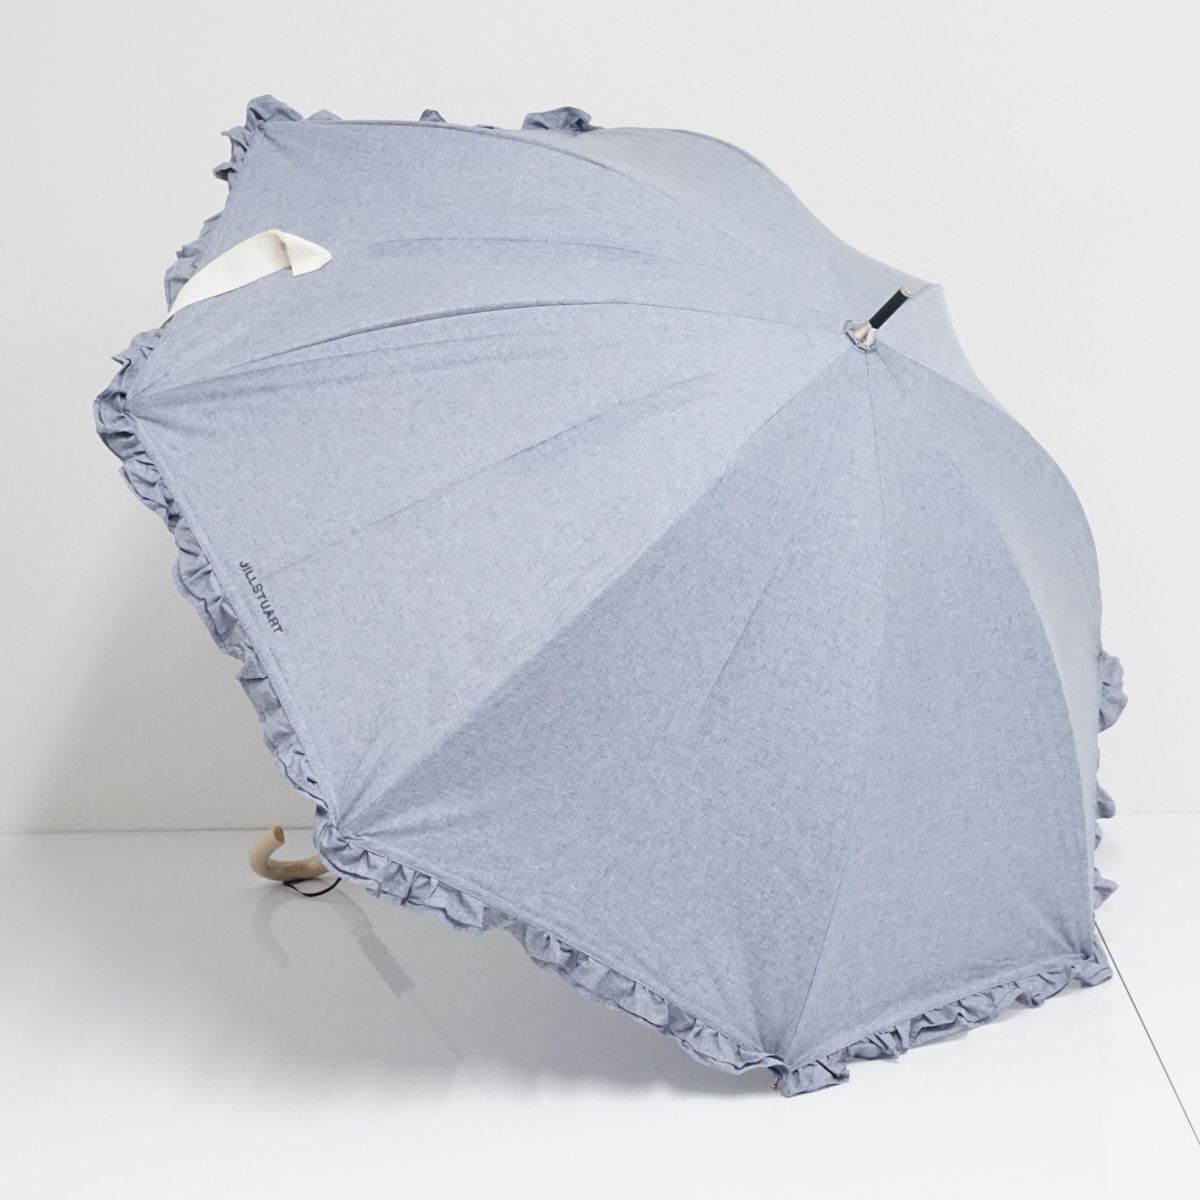 レディースジルスチュアート 傘 日傘 折りたたみ傘 水色 ライトブルー 